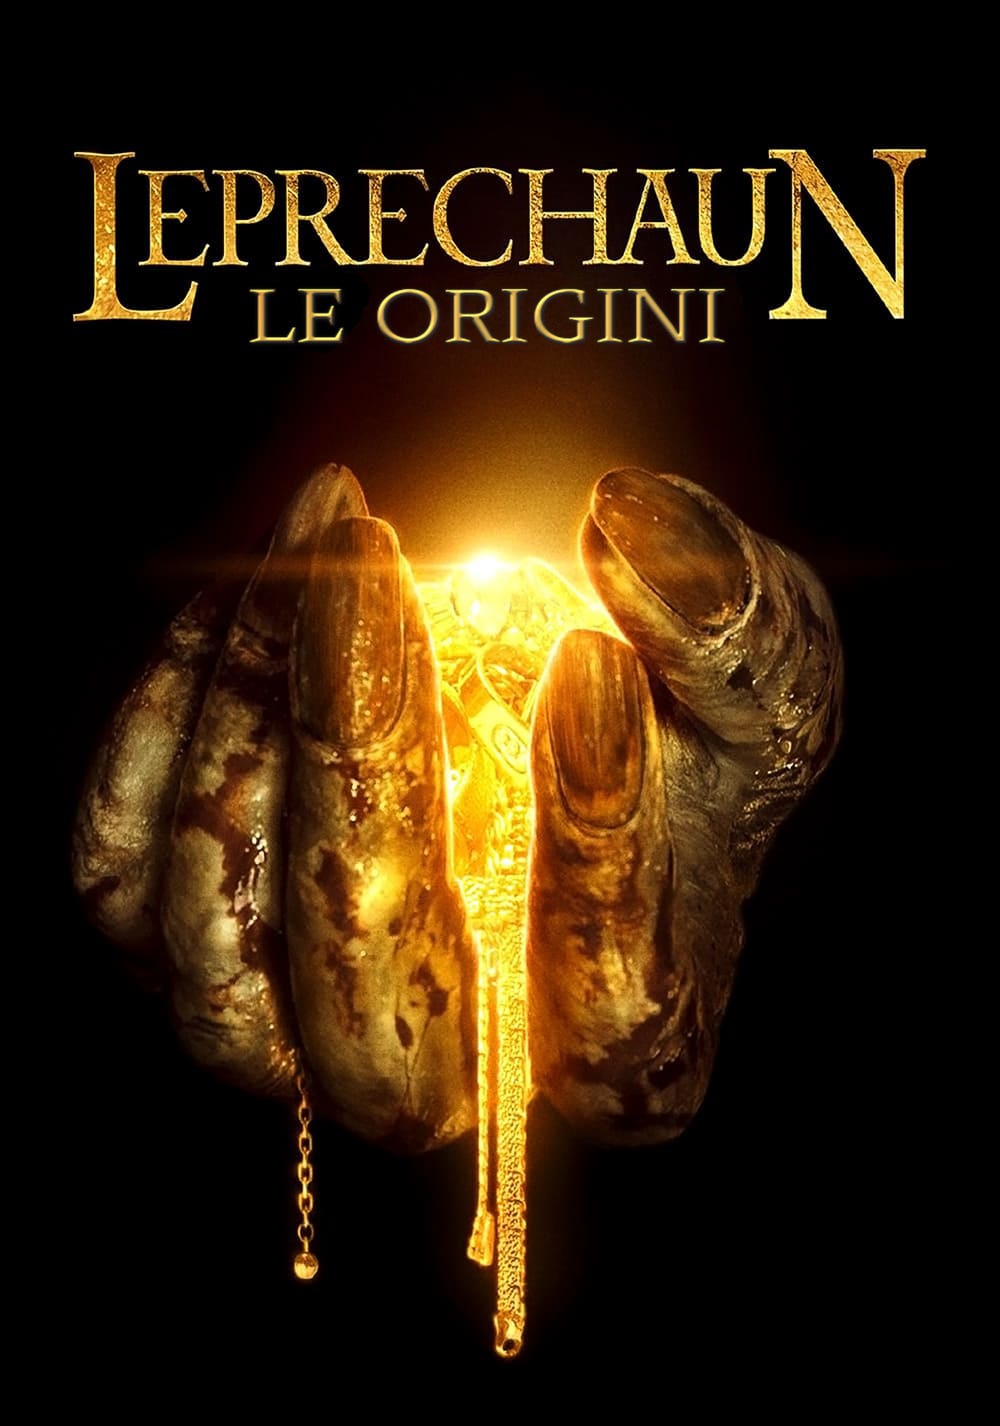 Leprechaun: Le origini [HD] (2014)